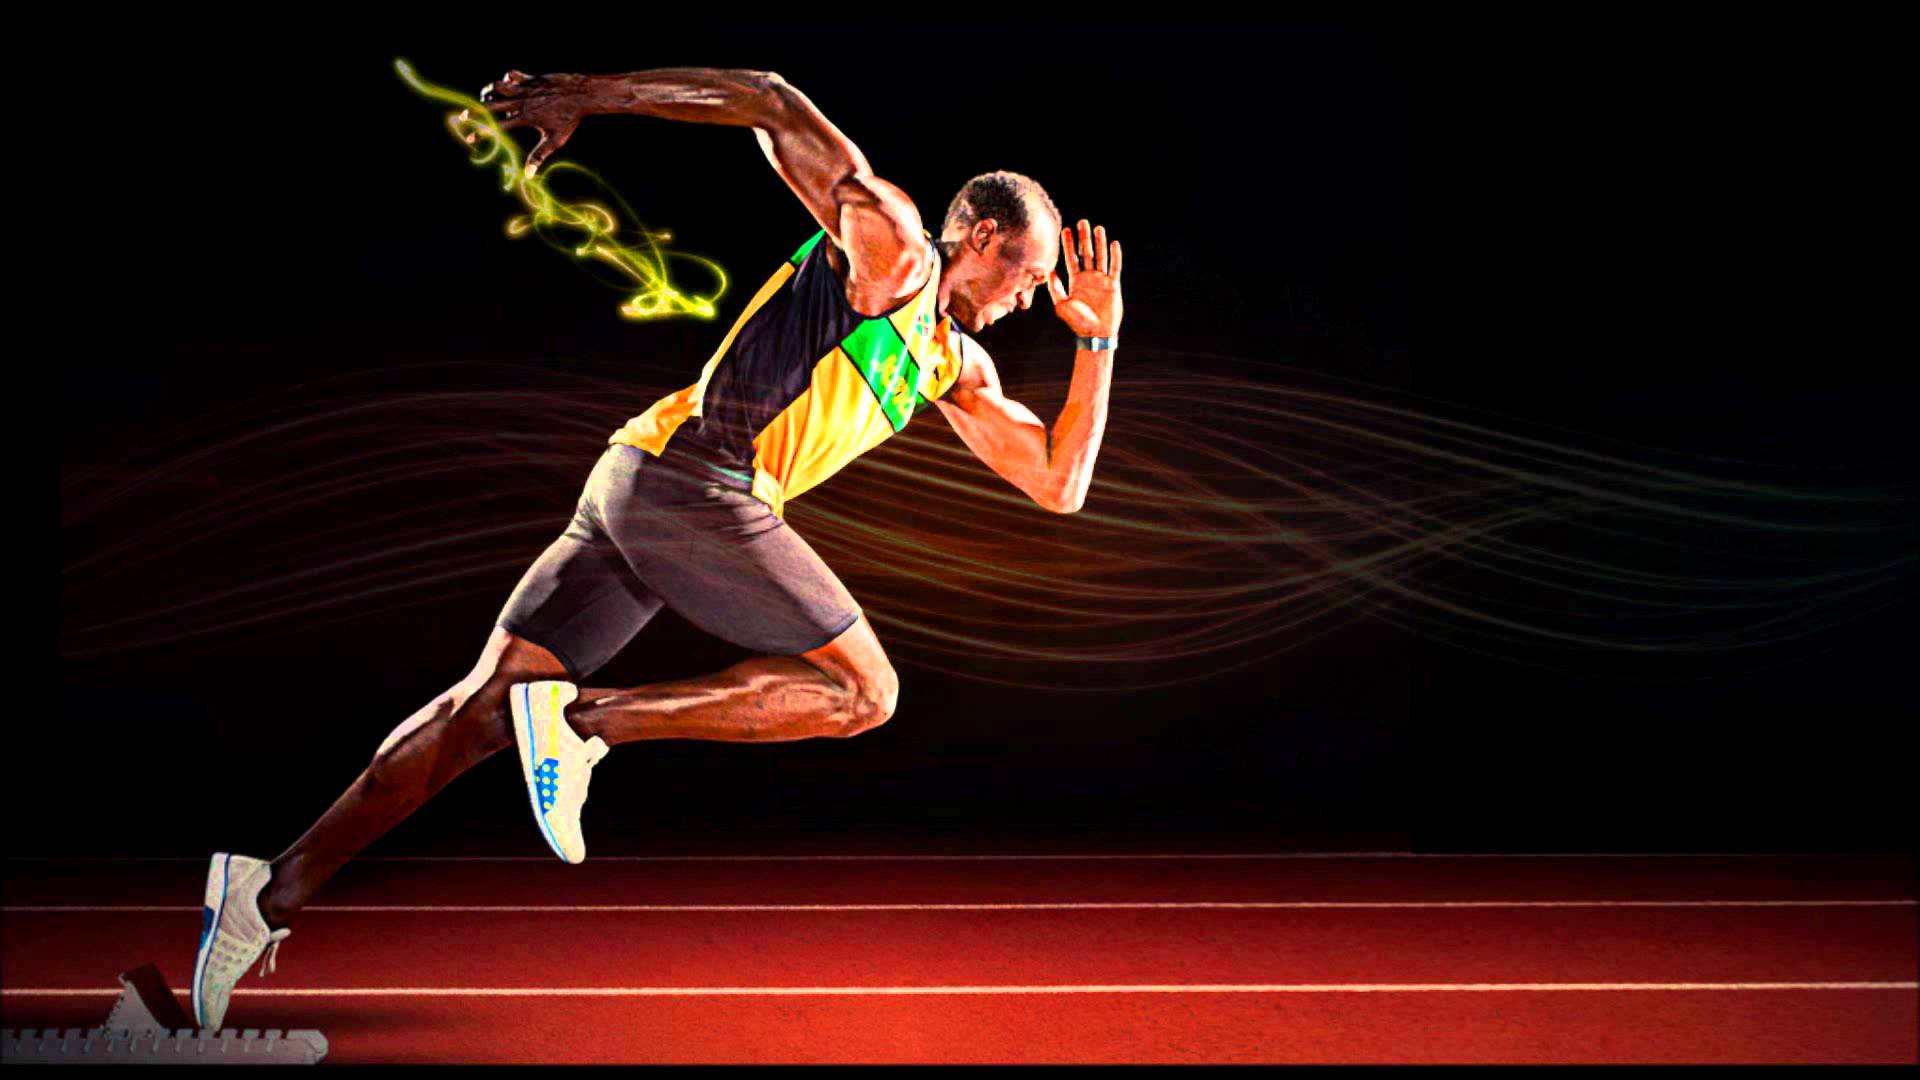 Usain Bolt Running Wallpapers Wallpaper Cave